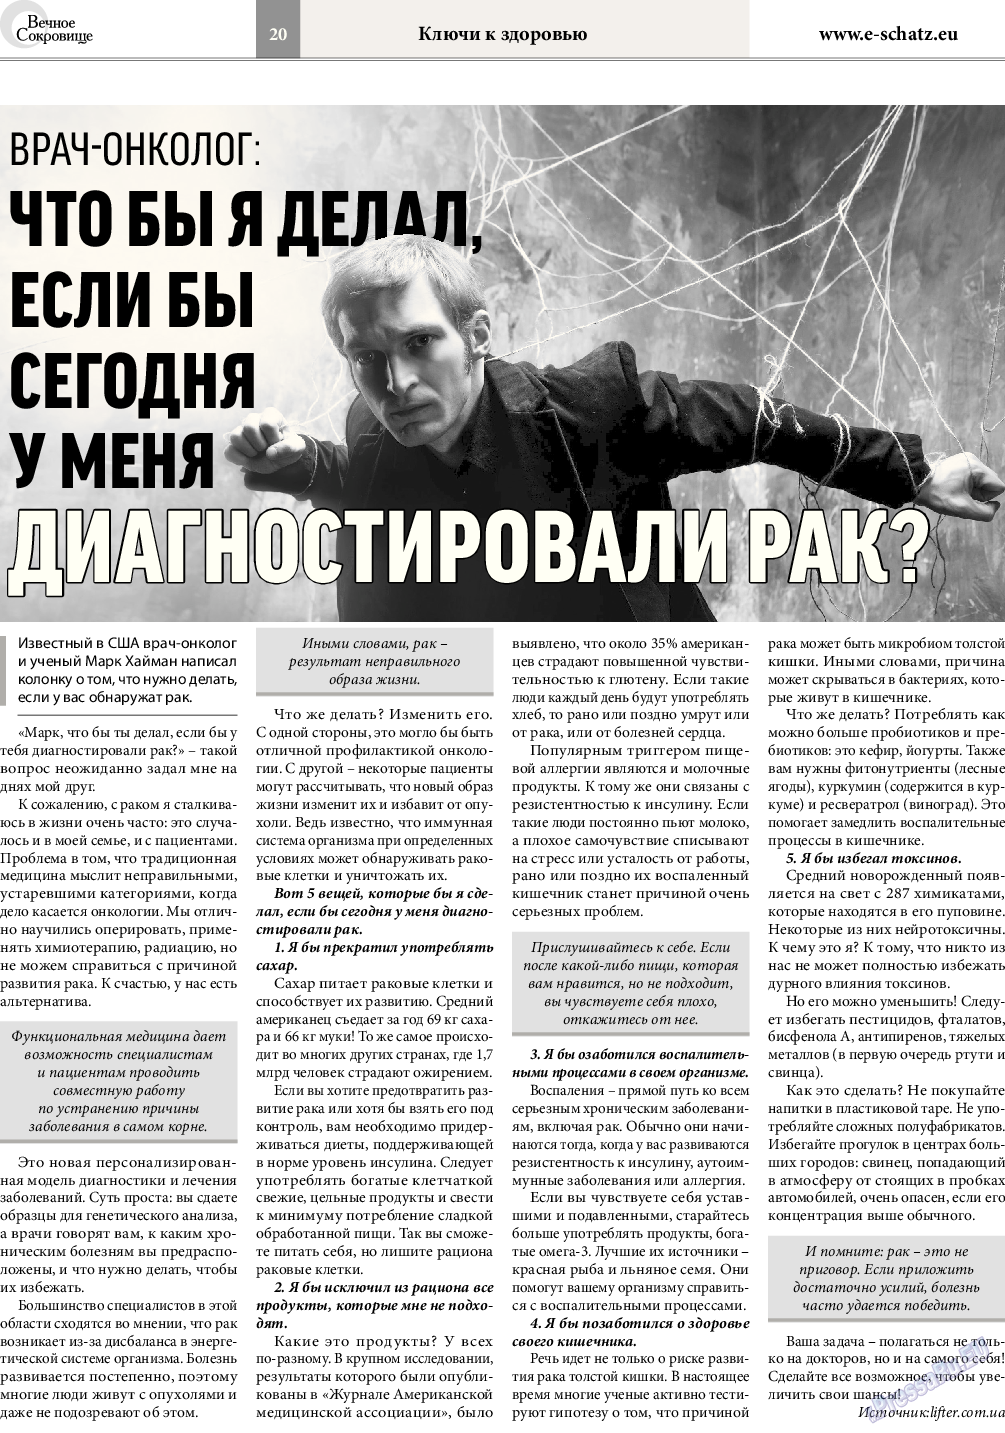 Вечное сокровище, газета. 2017 №1 стр.20